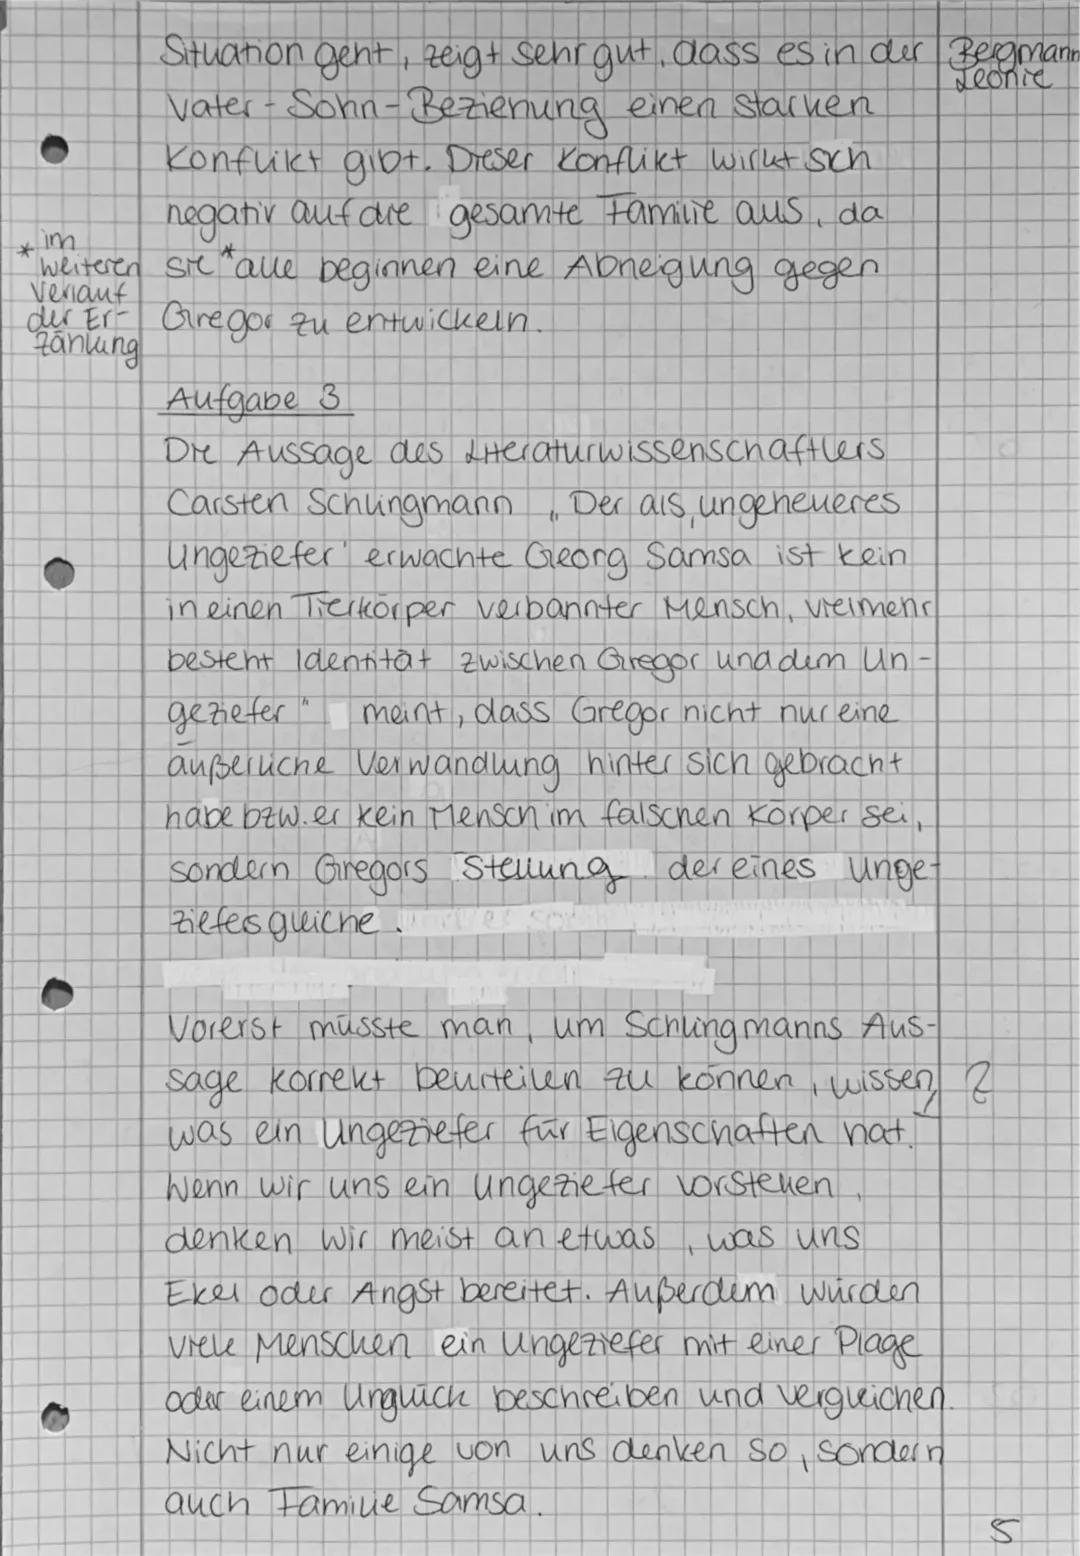 Deutschklausu
Franz
Aufgabe 1
Franz Kafkas
Kafka
#4
Nr. 2
Die Verwandlu
✓
ng
25.11.20
Bergmann
Leonie
1915 veröffentlichte Erzählung. Die
Ve